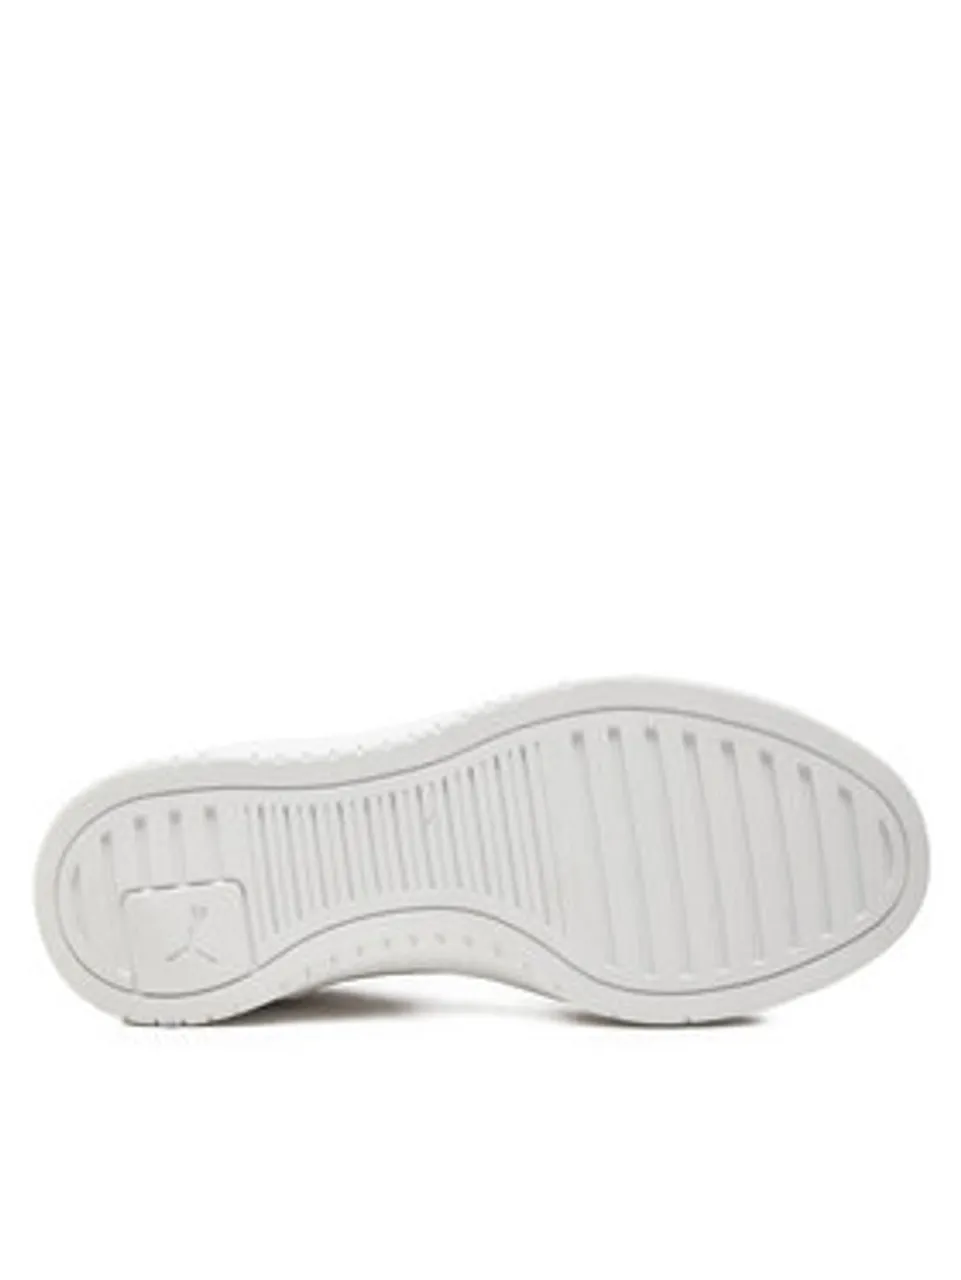 Puma Sneakers Ca Pro Lux Iii Jr 396600-01 Weiß